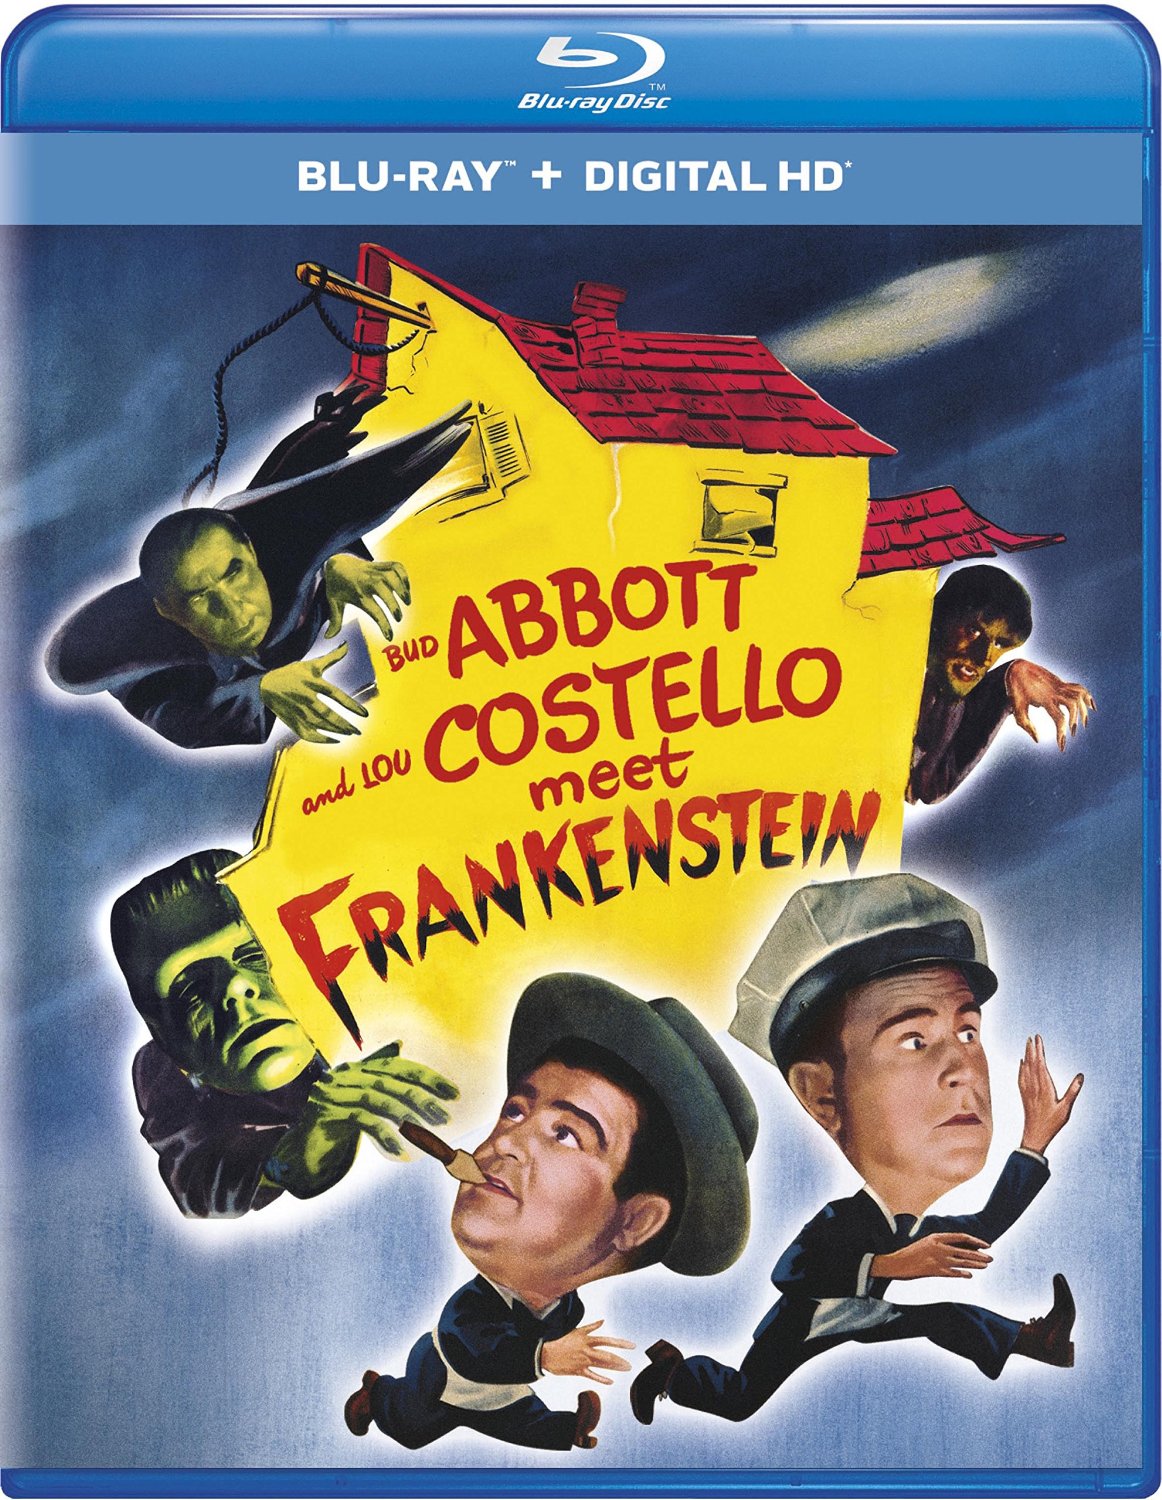 Bud Abbott and Lou Costello Meet Frankenstein, starring Bela Lugosi, Lon Chaney Jr., Glenn Strange